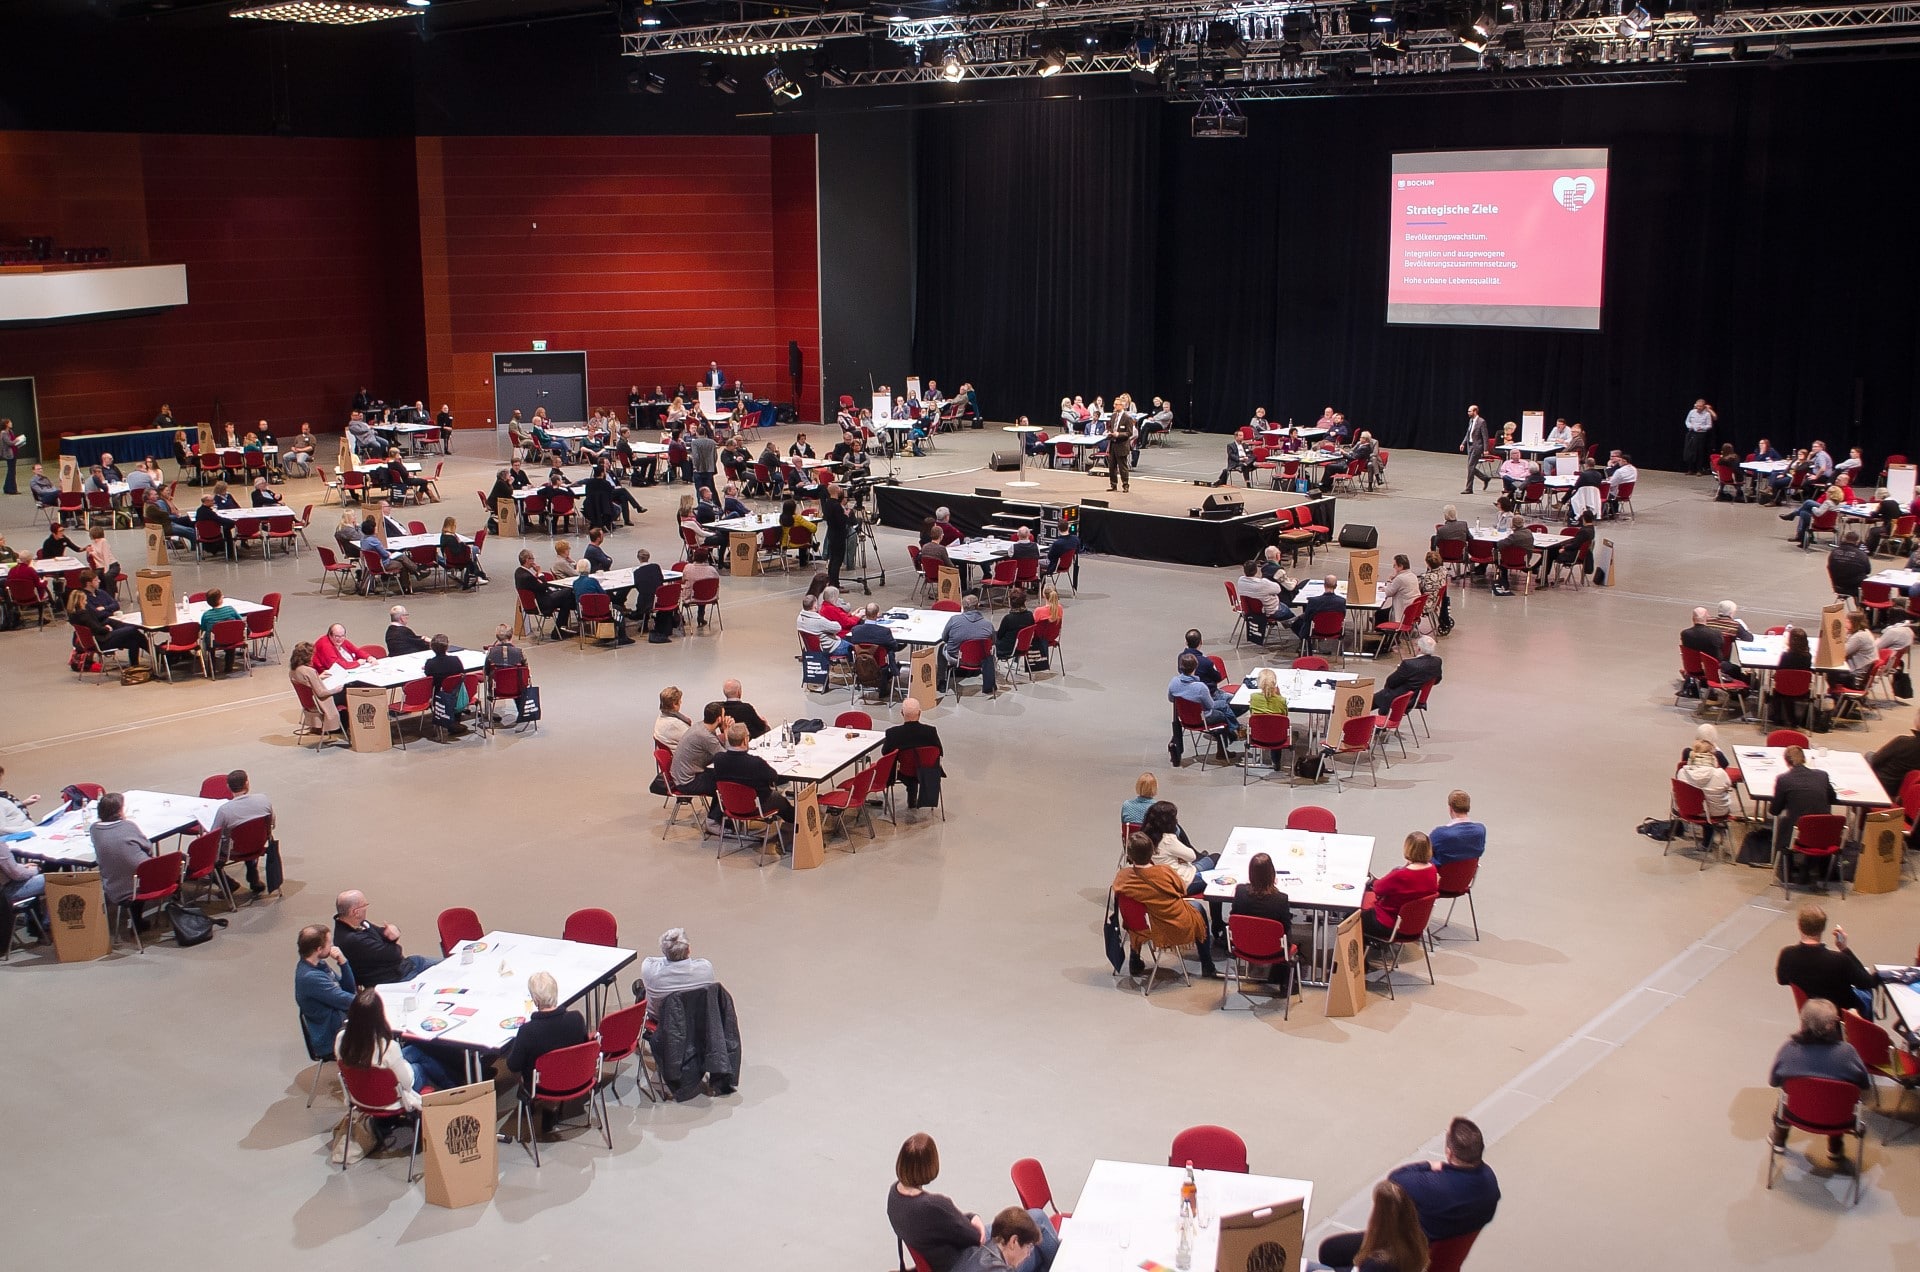 Bürgerkonferenz am 11.02.2017 im RuhrCongress in Bochum. +++ Foto: Lutz Leitmann/Stadt Bochum, Referat für Kommunikation